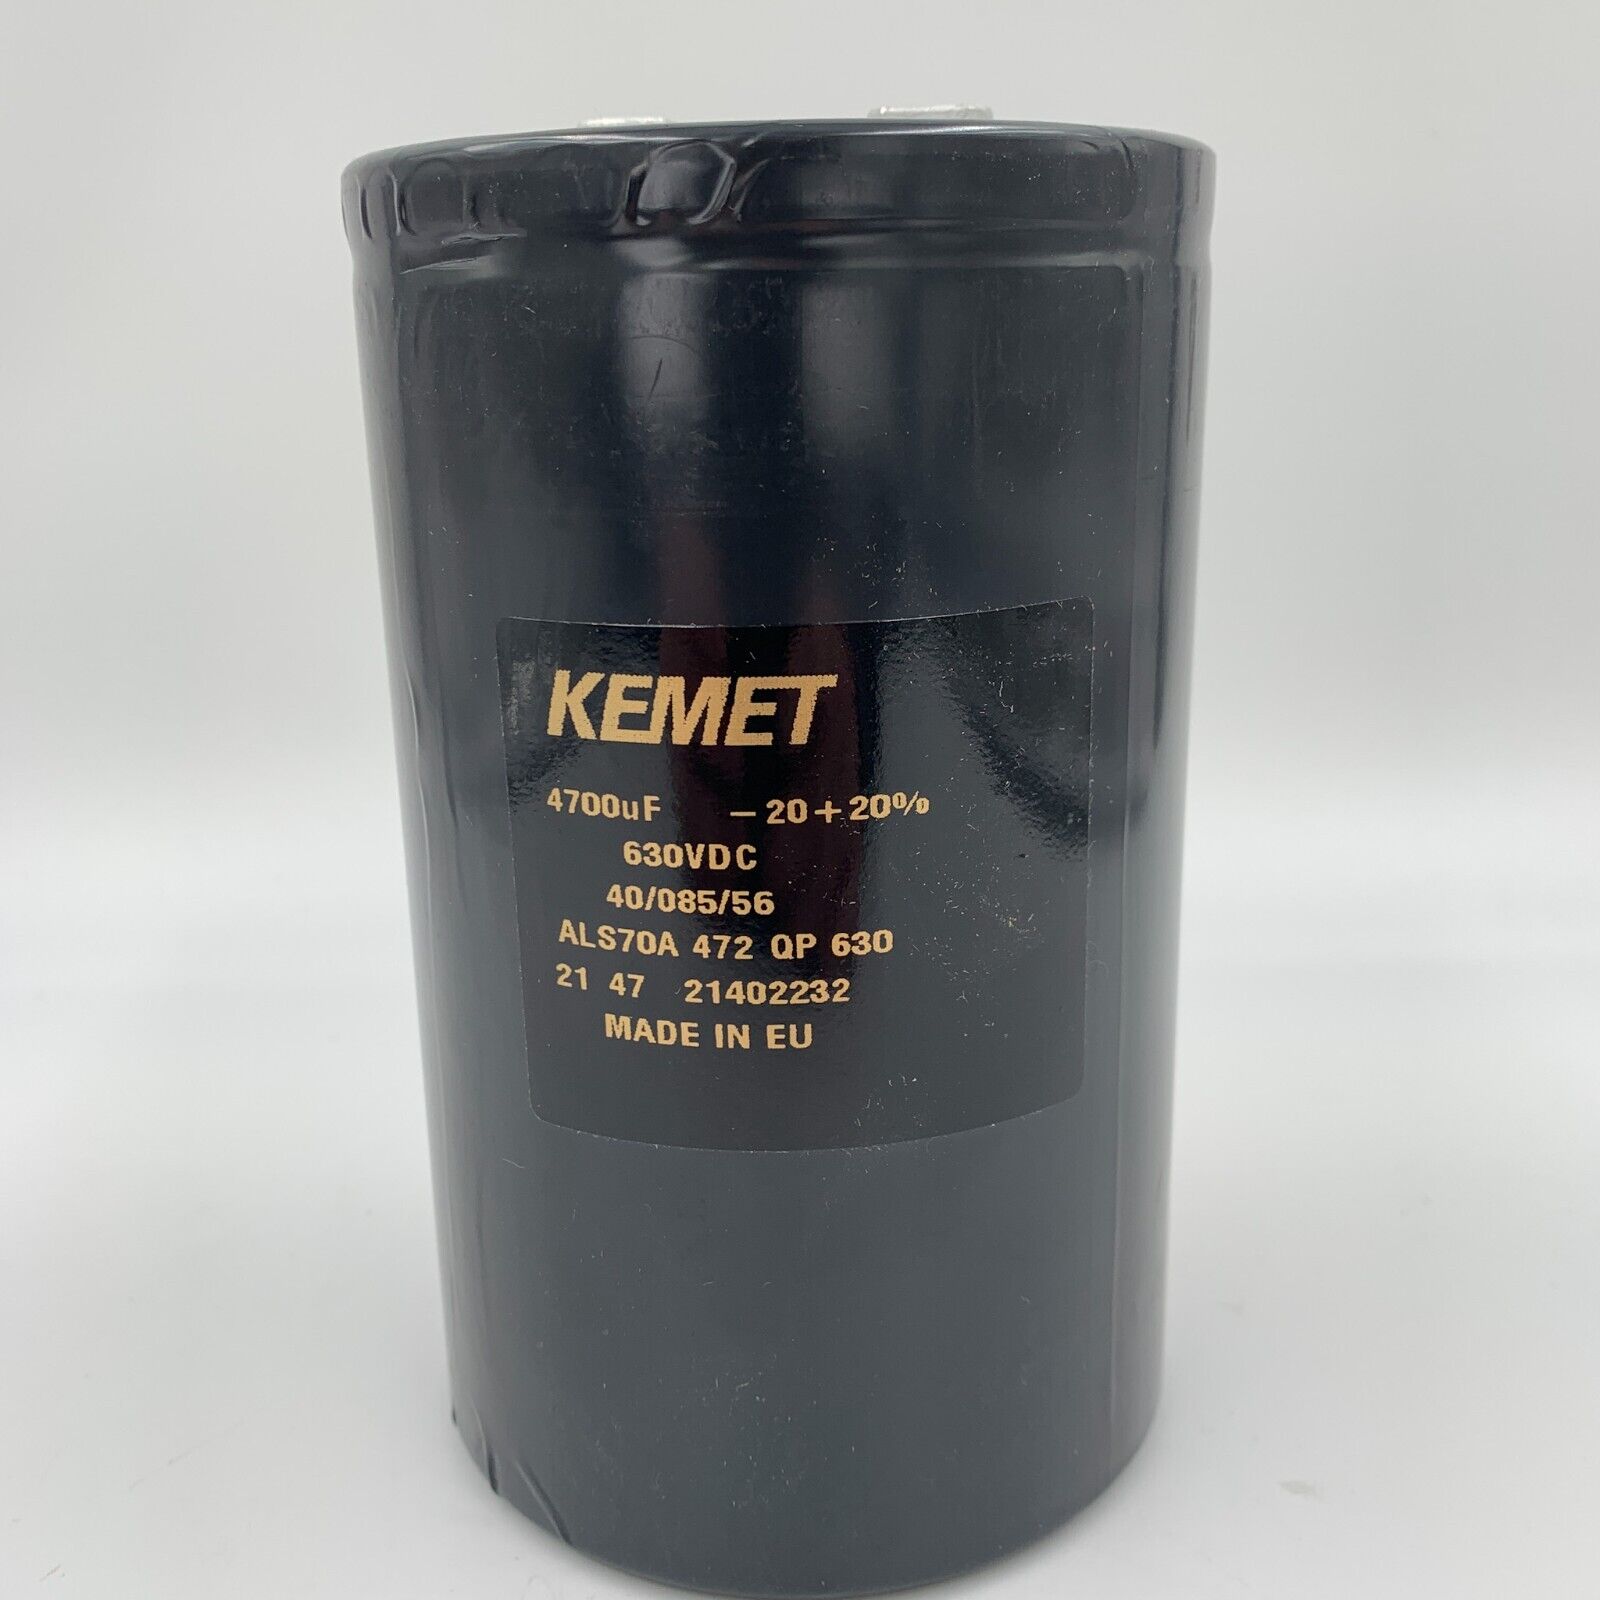 KEMET ALS70A472QP630 Aluminum Electrolytic Capacitor 630V DC 4700uF